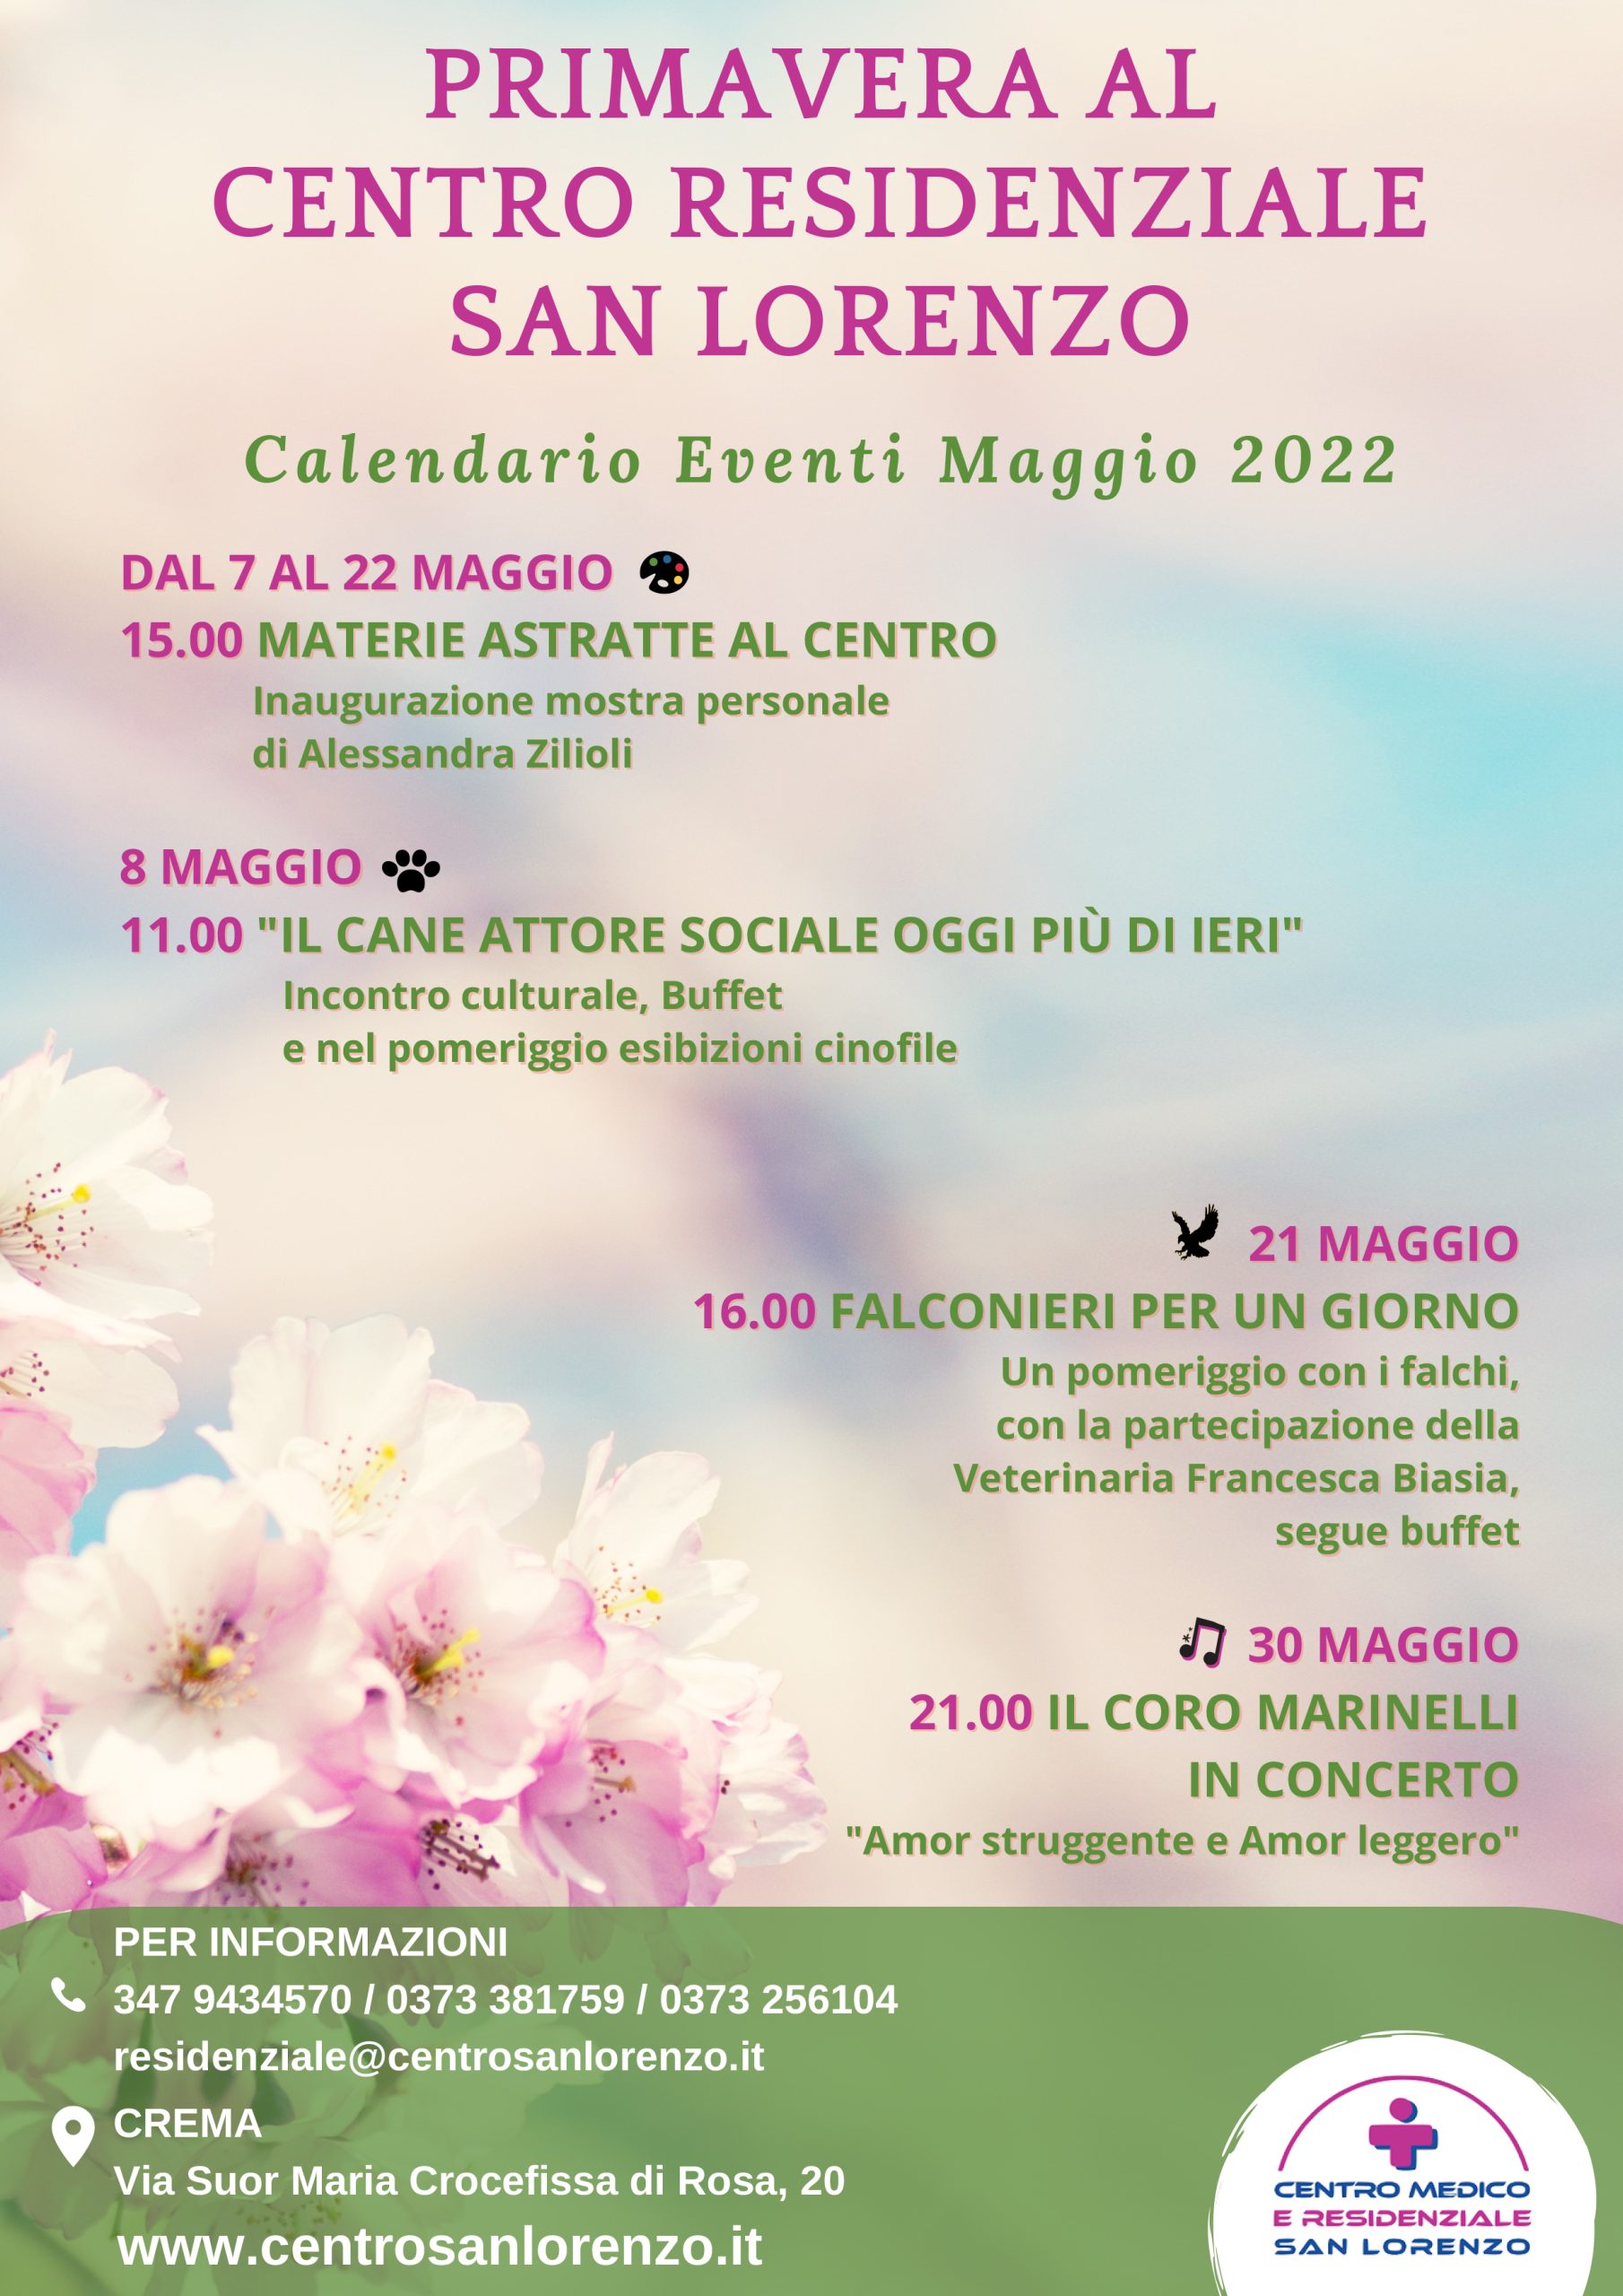 Un calendario ricco di eventi aperti al pubblico al Centro Residenziale San Lorenzo di Crema